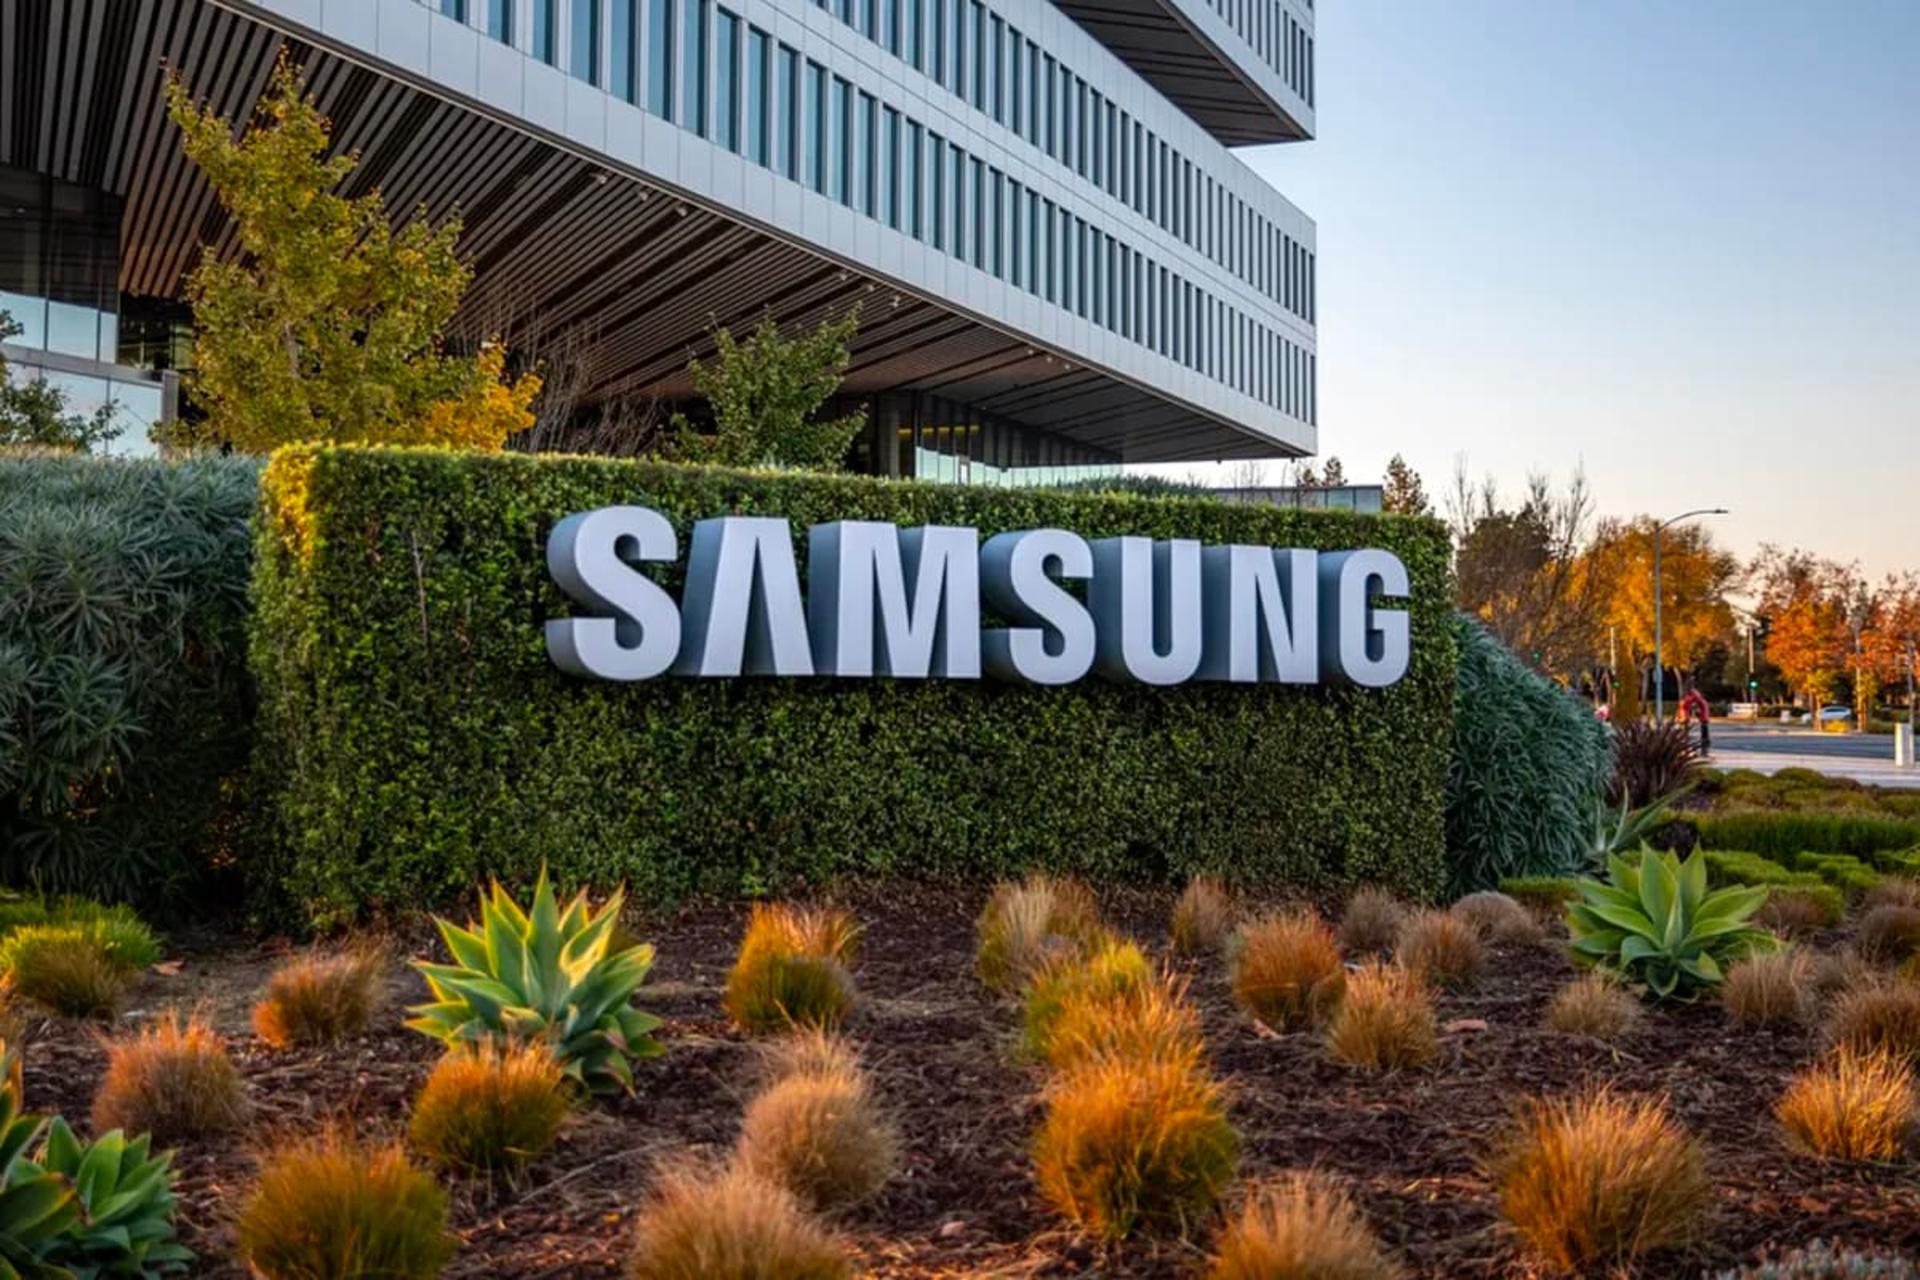 لوگو سامسونگ / Samsung روی پرچین در محیط روباز